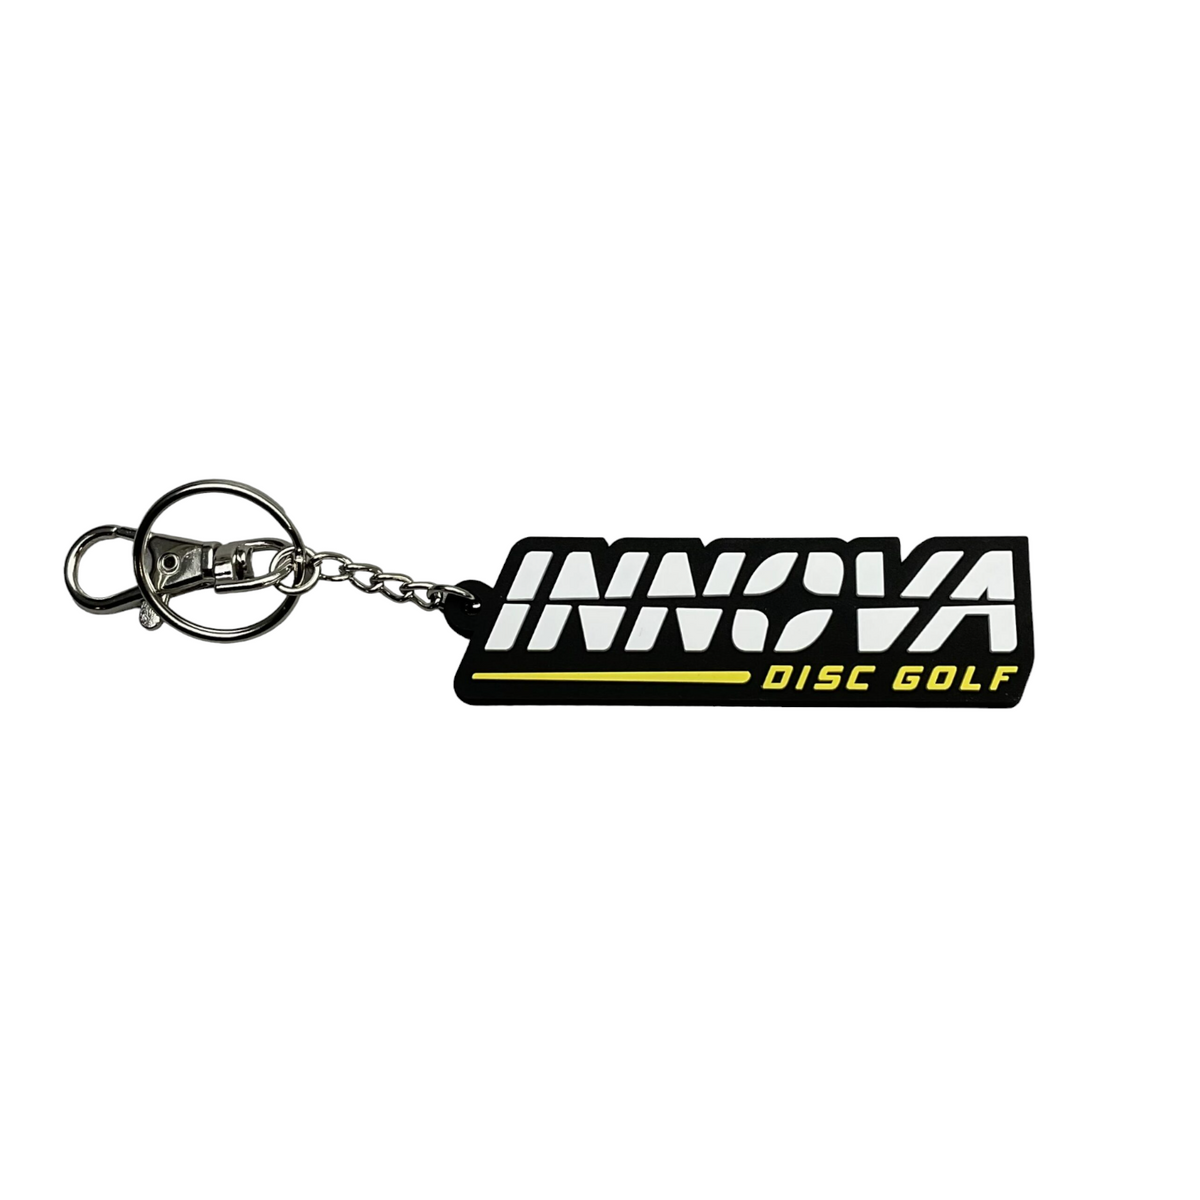 Innova Burst Logo Key Chain